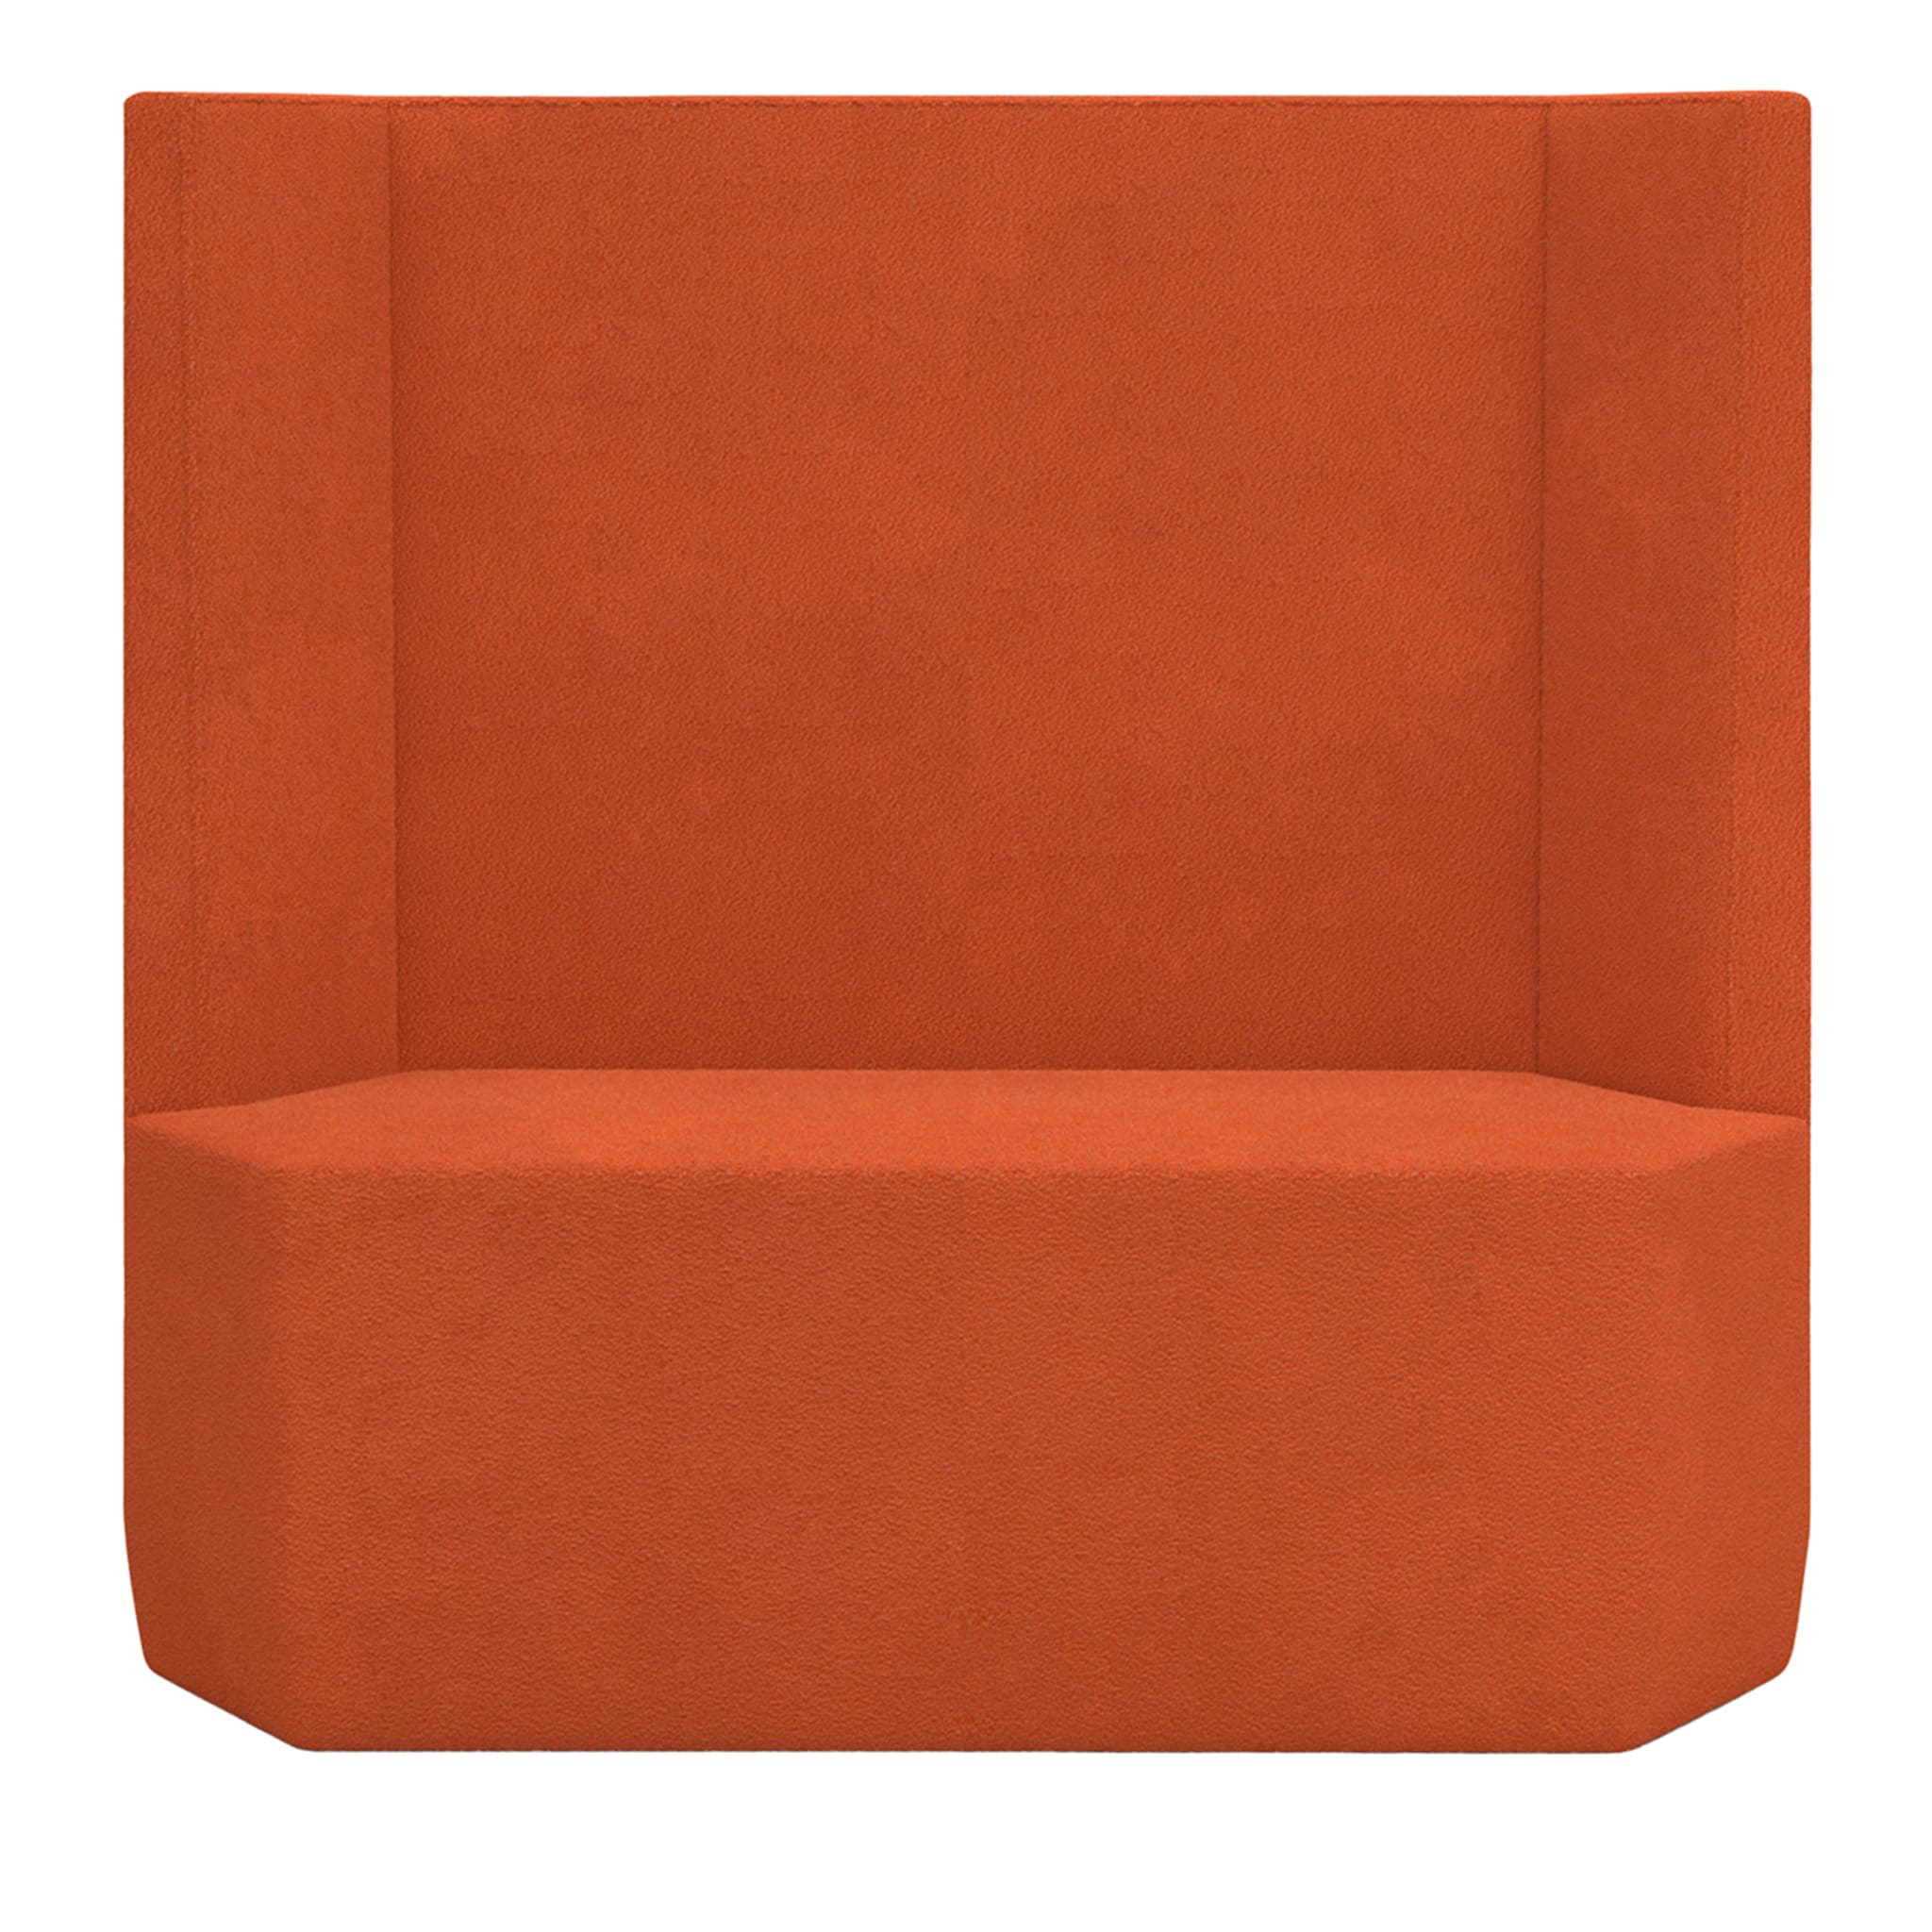 Tigram Großes orangefarbenes sofa von Italo Pertichini - Hauptansicht